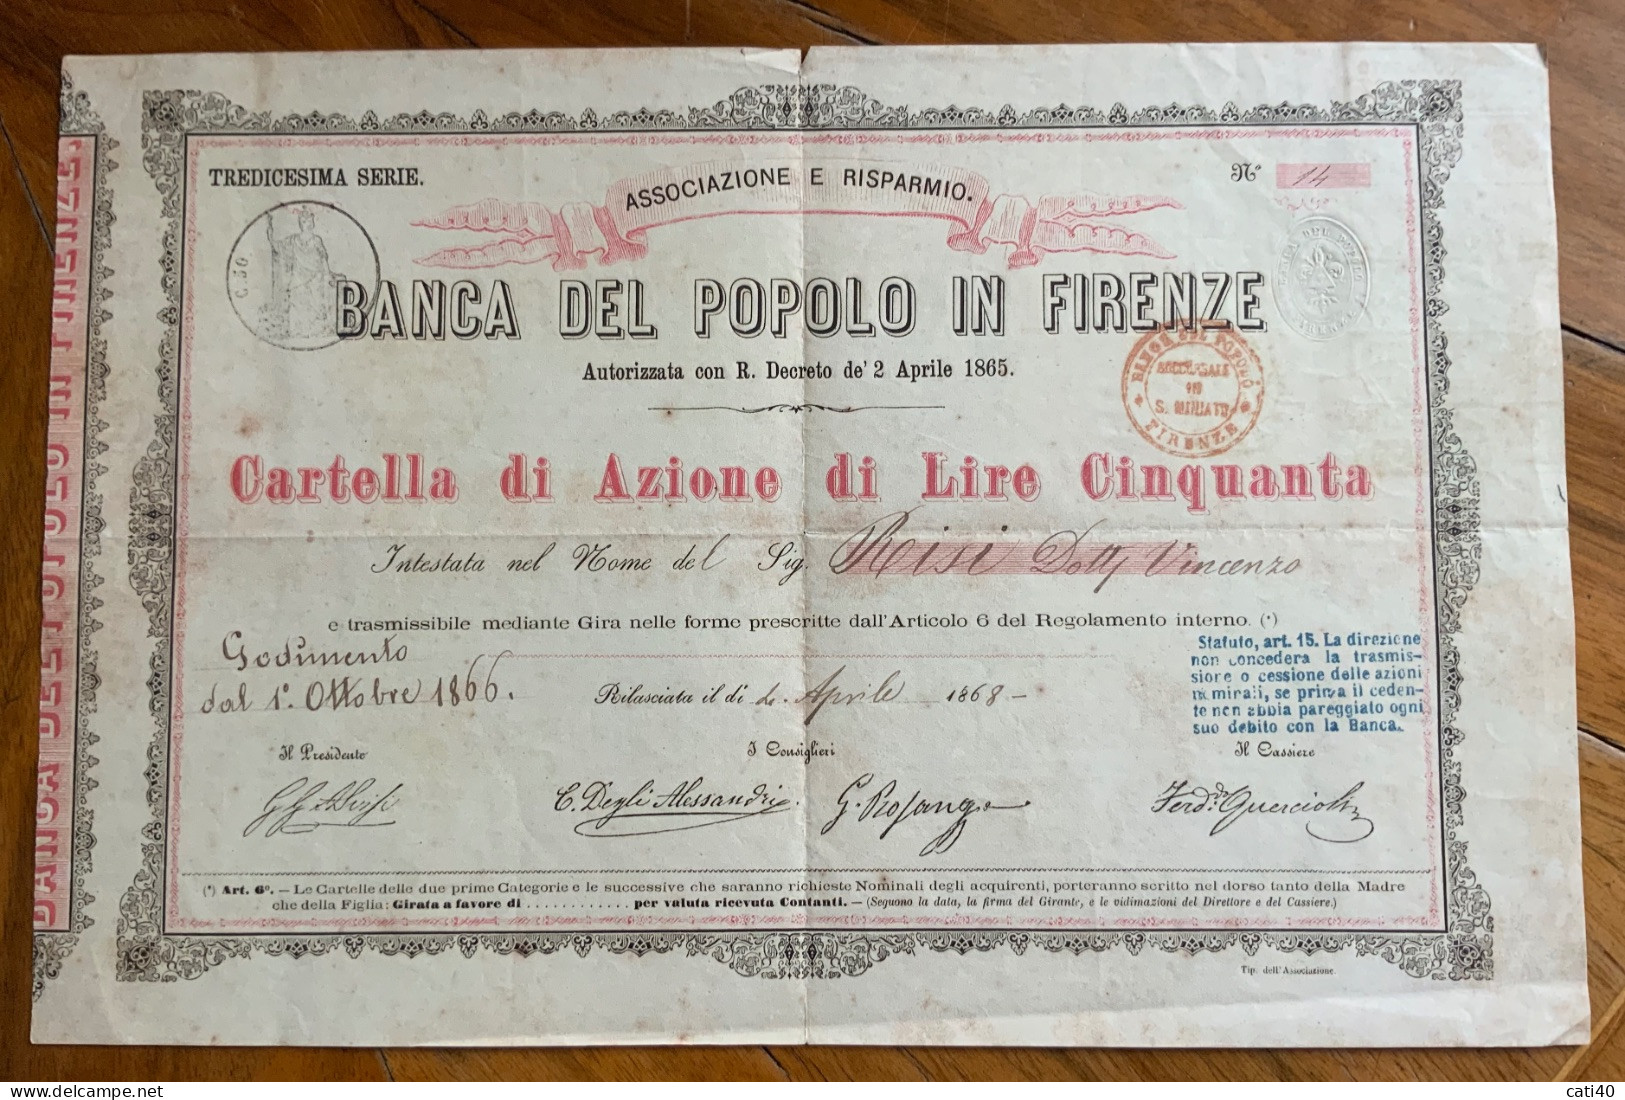 BANCA DEL POPOLO IN FIRENZE - CARTELLA DI AZIONE DA LIRE CINQUANTA - 1866  - TREDICESIMA SERIE - Trasporti